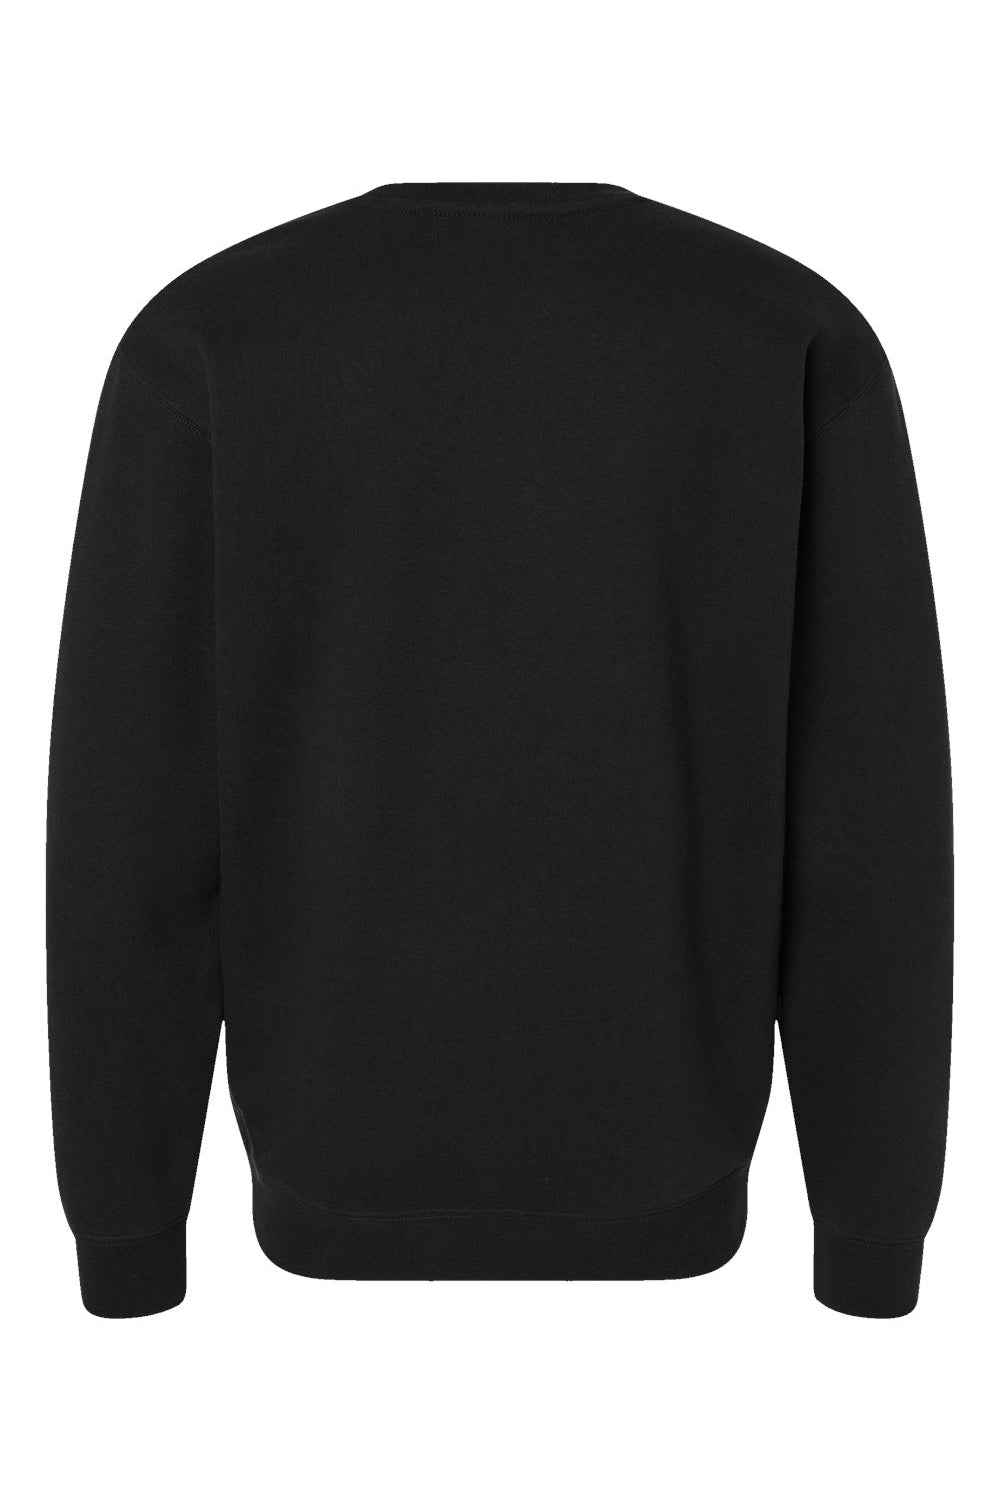 Independent Trading Co. IND3000 Mens Crewneck Sweatshirt Black Flat Back